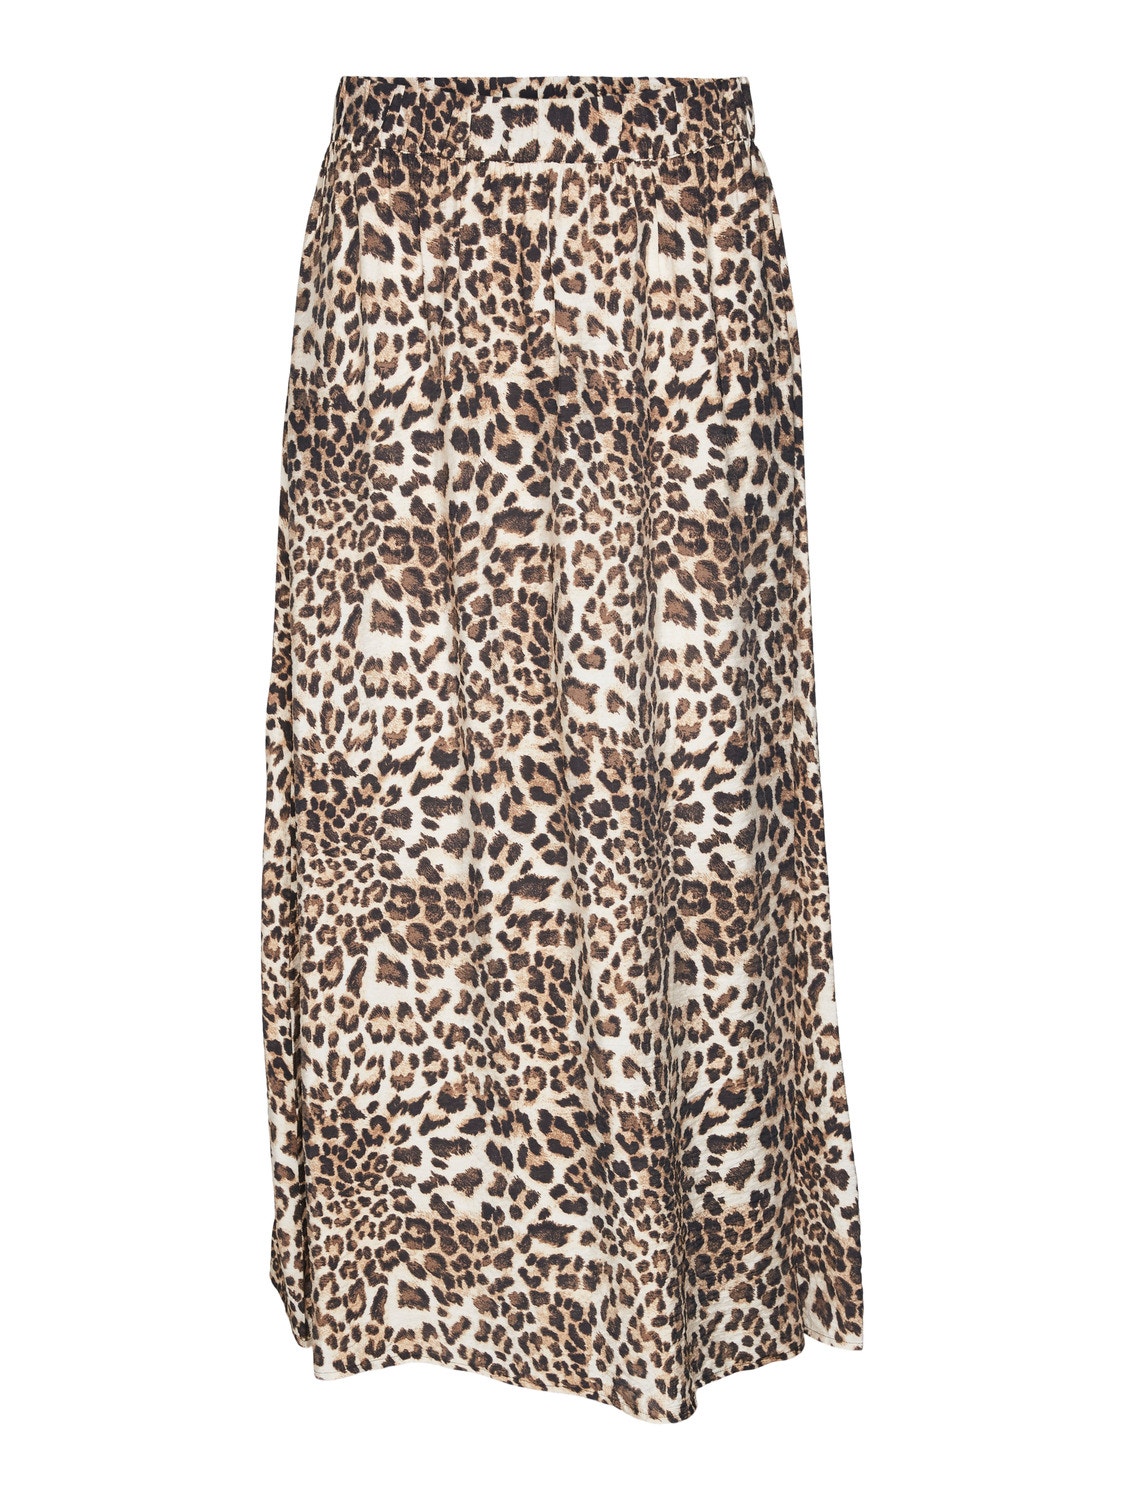 Vero Moda VMJOSIE Long Skirt -Sandshell - 10303407